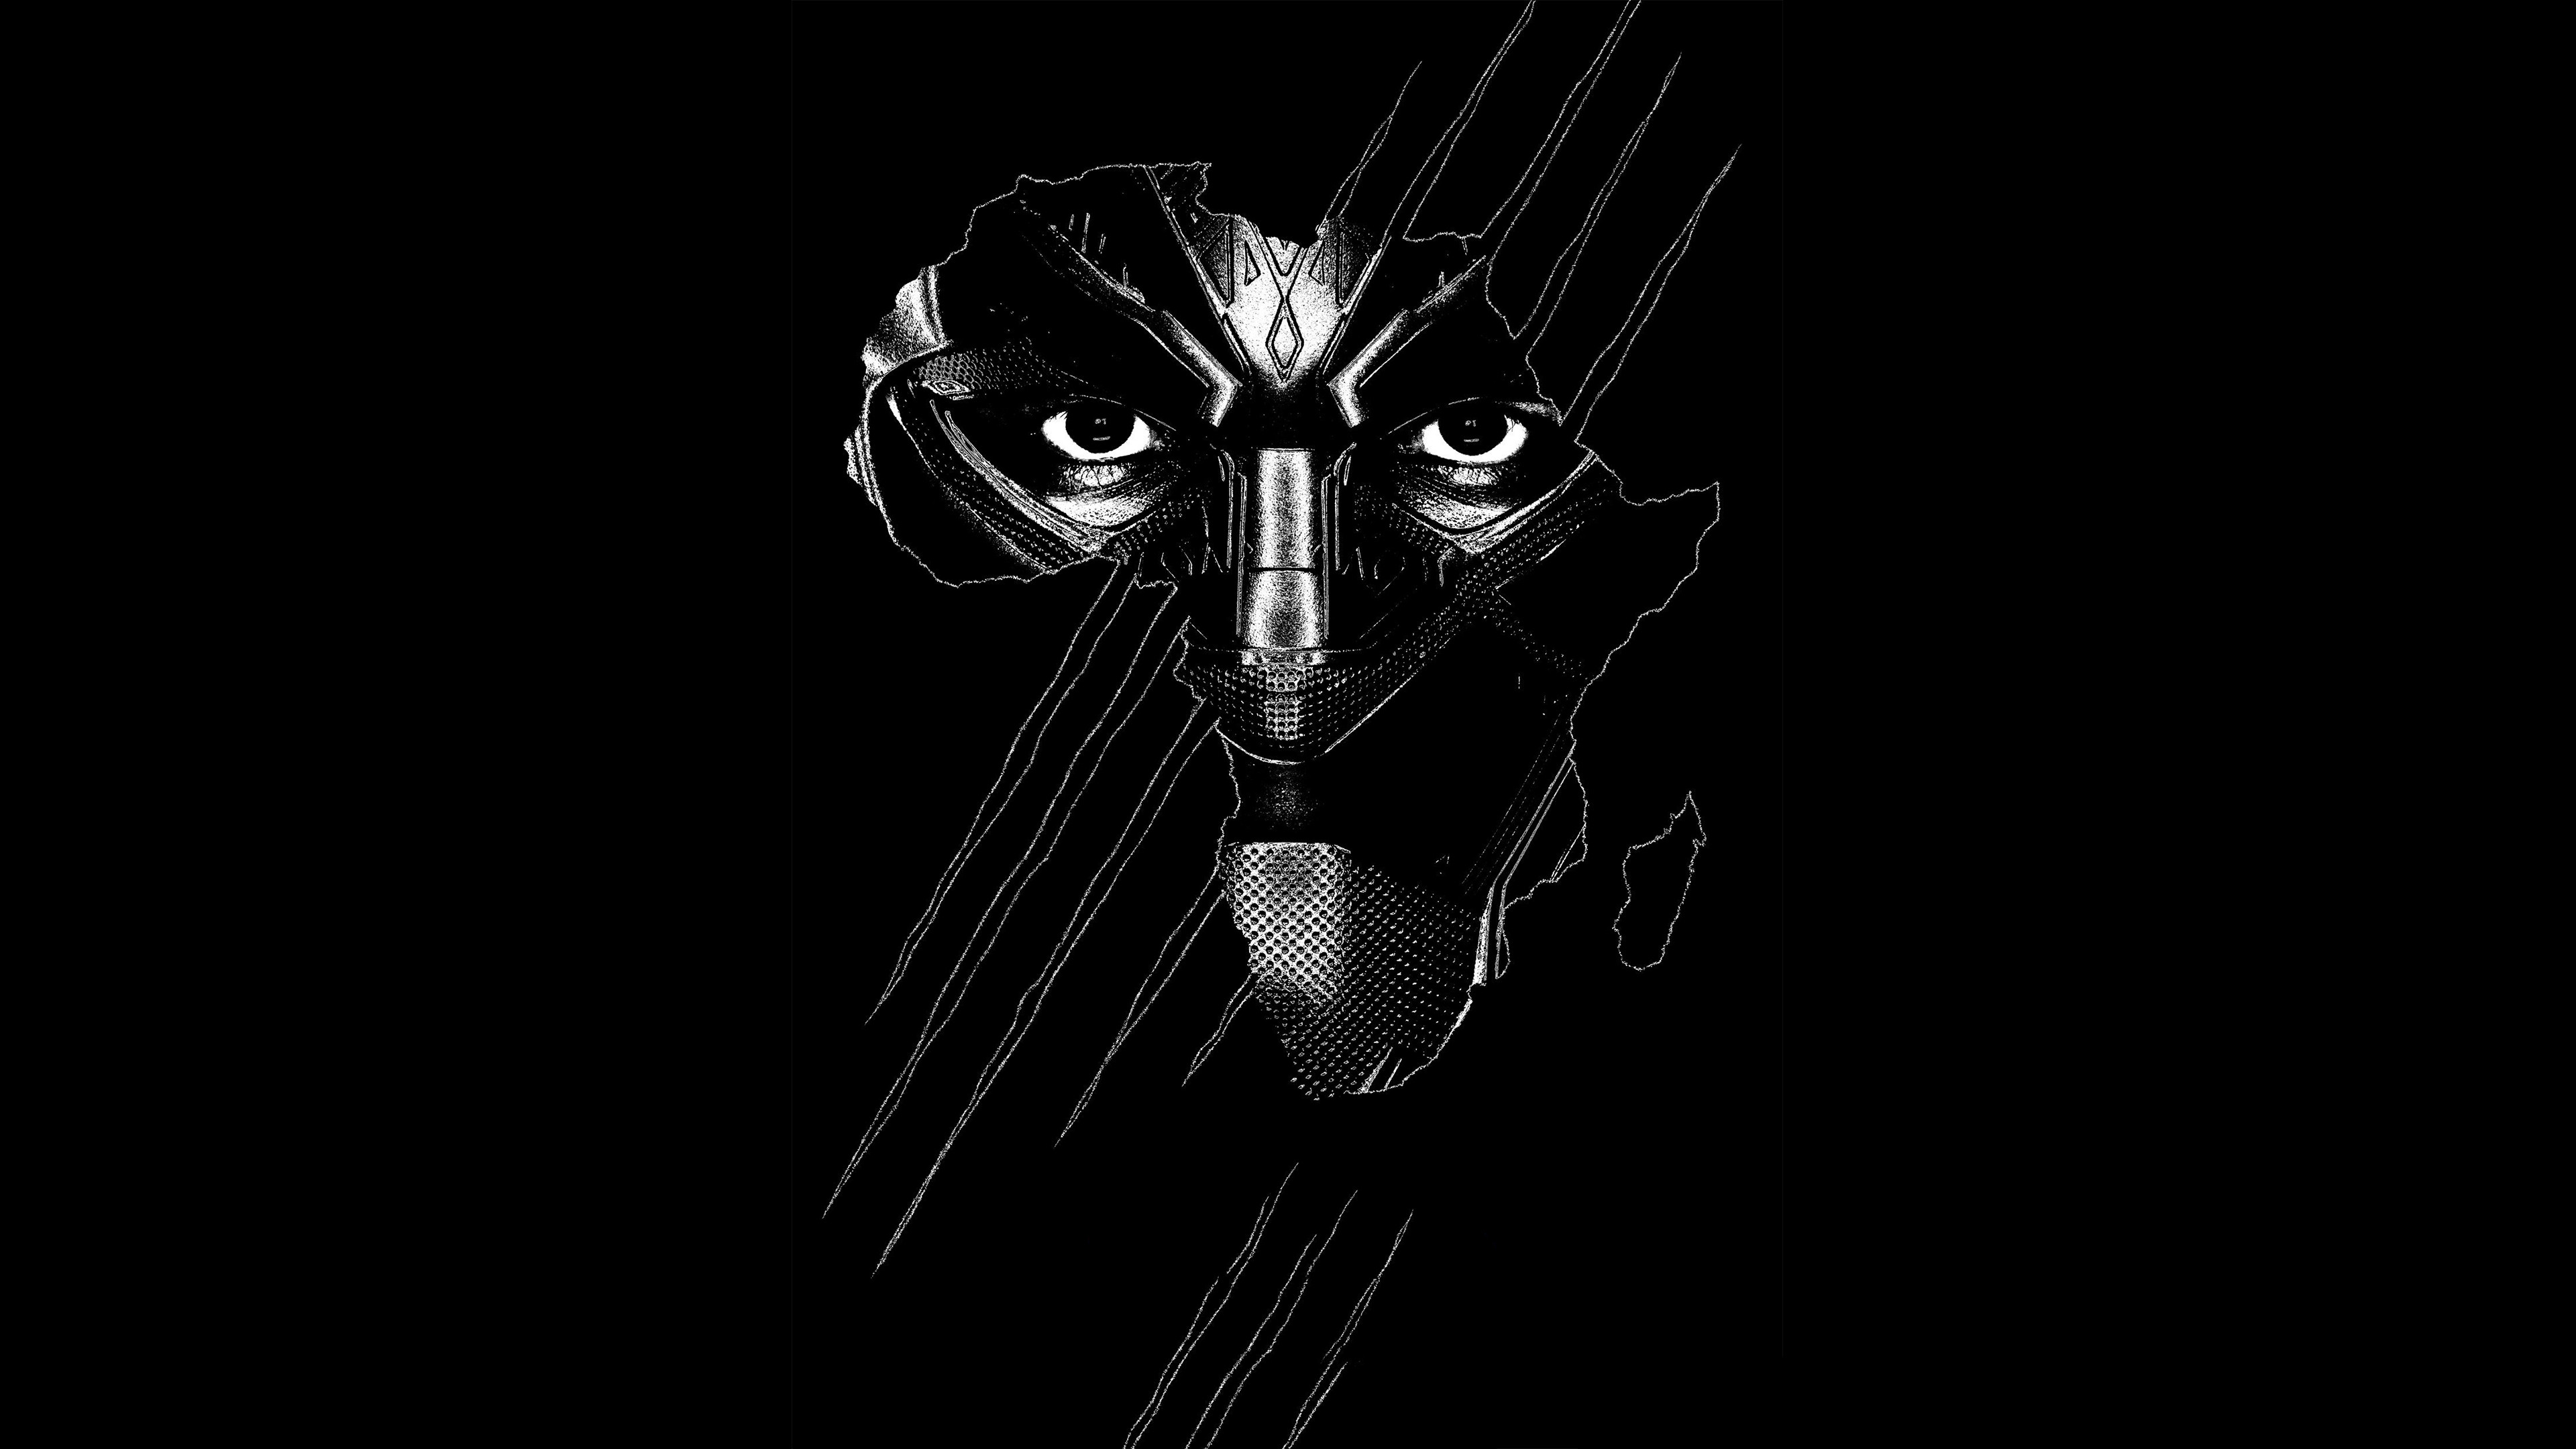 Hình nền Black Panther sẽ khiến bạn tưởng nhớ đến siêu anh hùng mang cánh tay sắt nổi tiếng trong Vũ trụ Điện ảnh Marvel. Sự uyển chuyển của hình ảnh huyền thoại này sẽ truyền cảm hứng cho bạn mỗi khi nhìn vào chiếc điện thoại của mình.